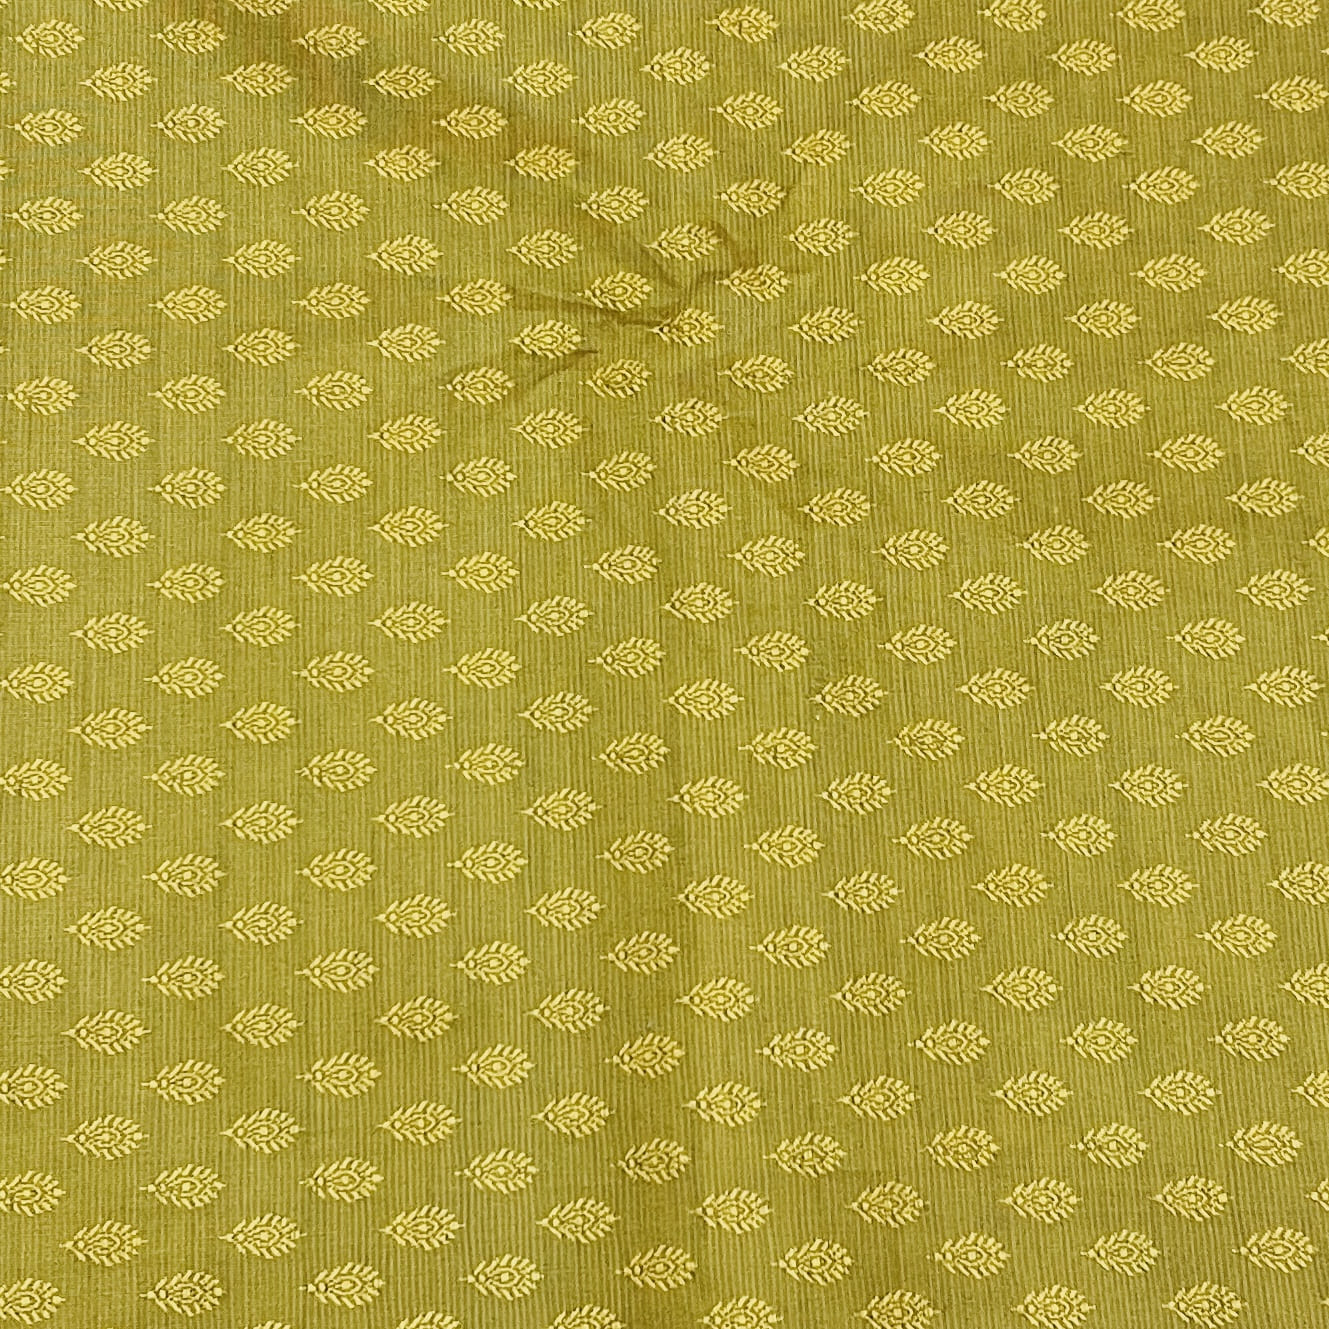 Premium Yellow Buti Work Brocade Silk Fabric